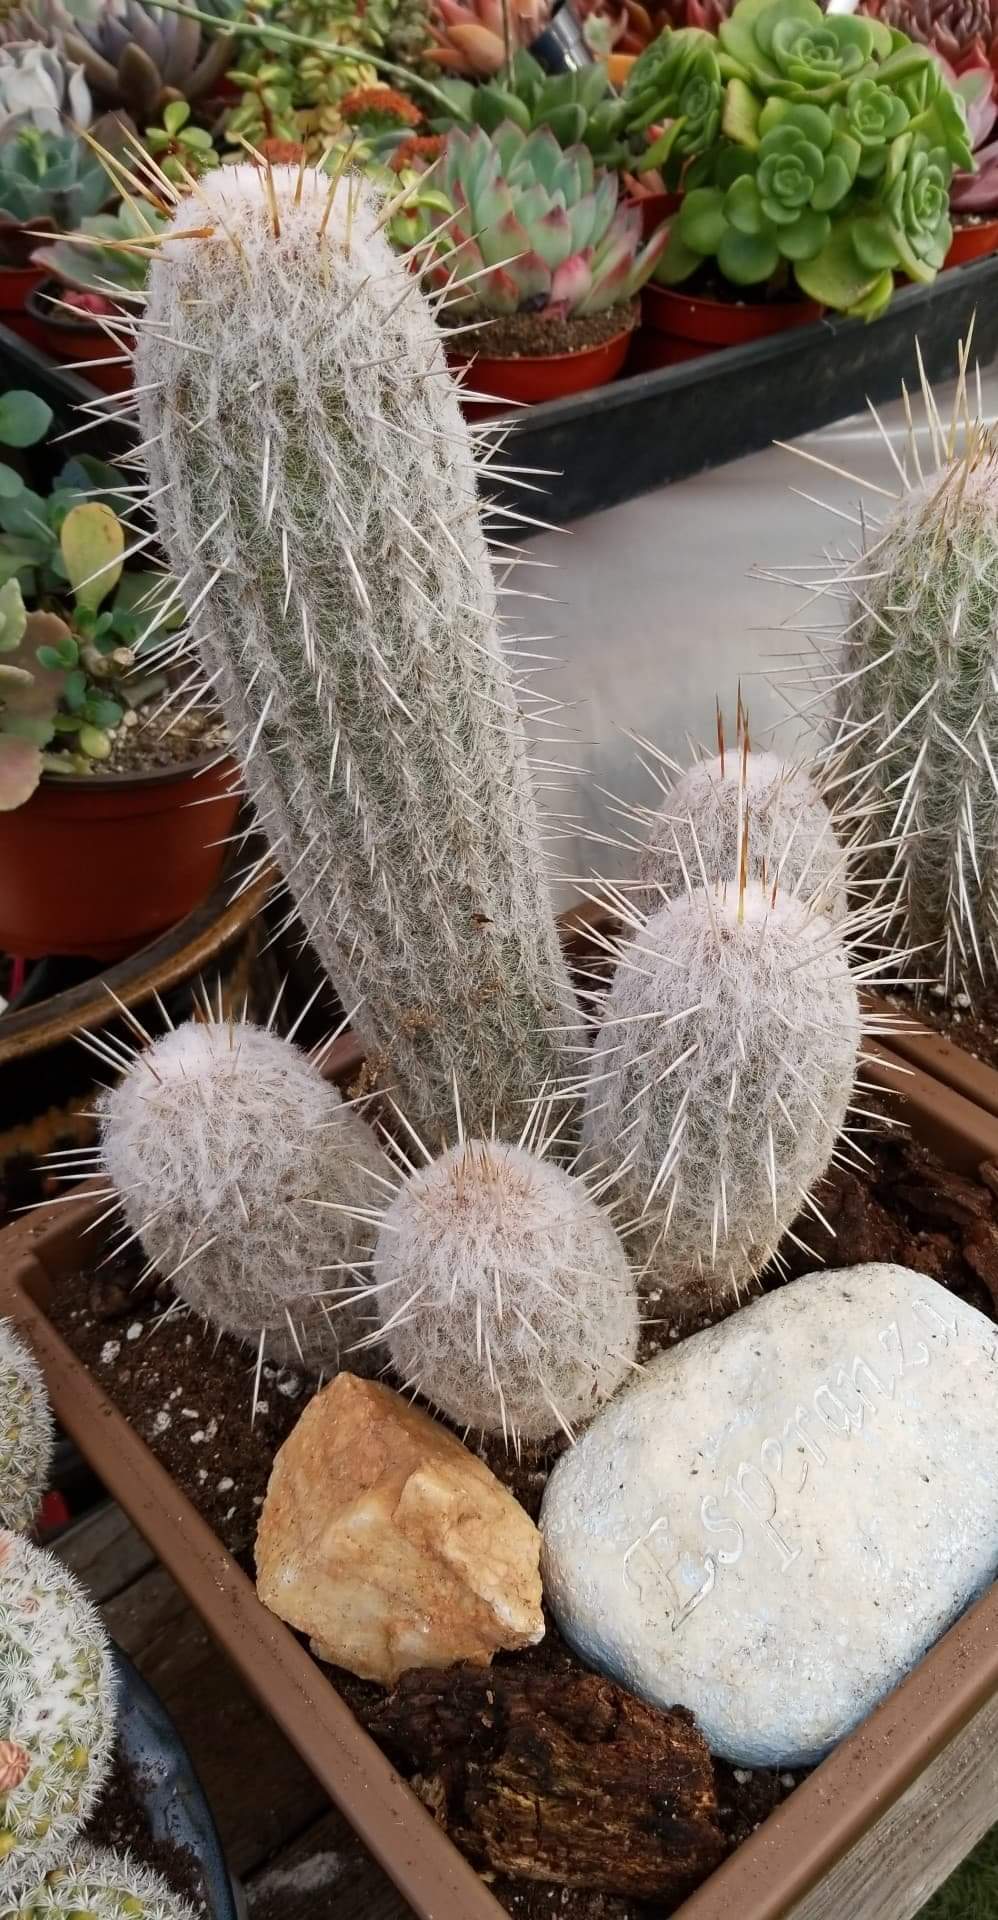 Espostoa Cactus